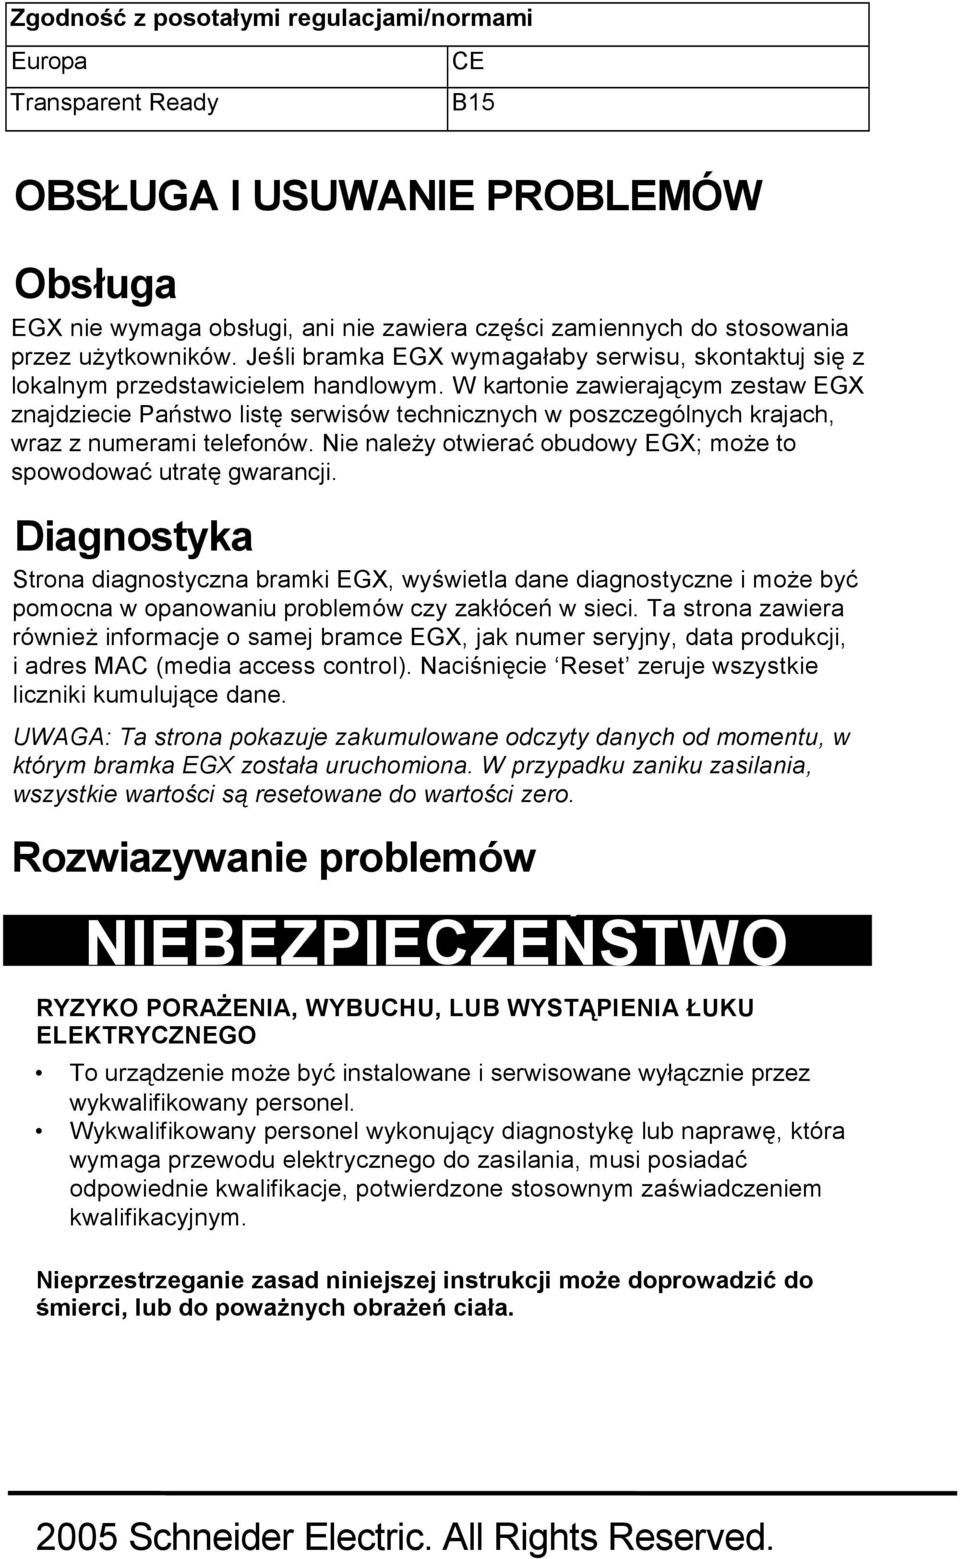 W kartonie zawierającym zestaw EGX znajdziecie Państwo listę serwisów technicznych w poszczególnych krajach, wraz z numerami telefonów.